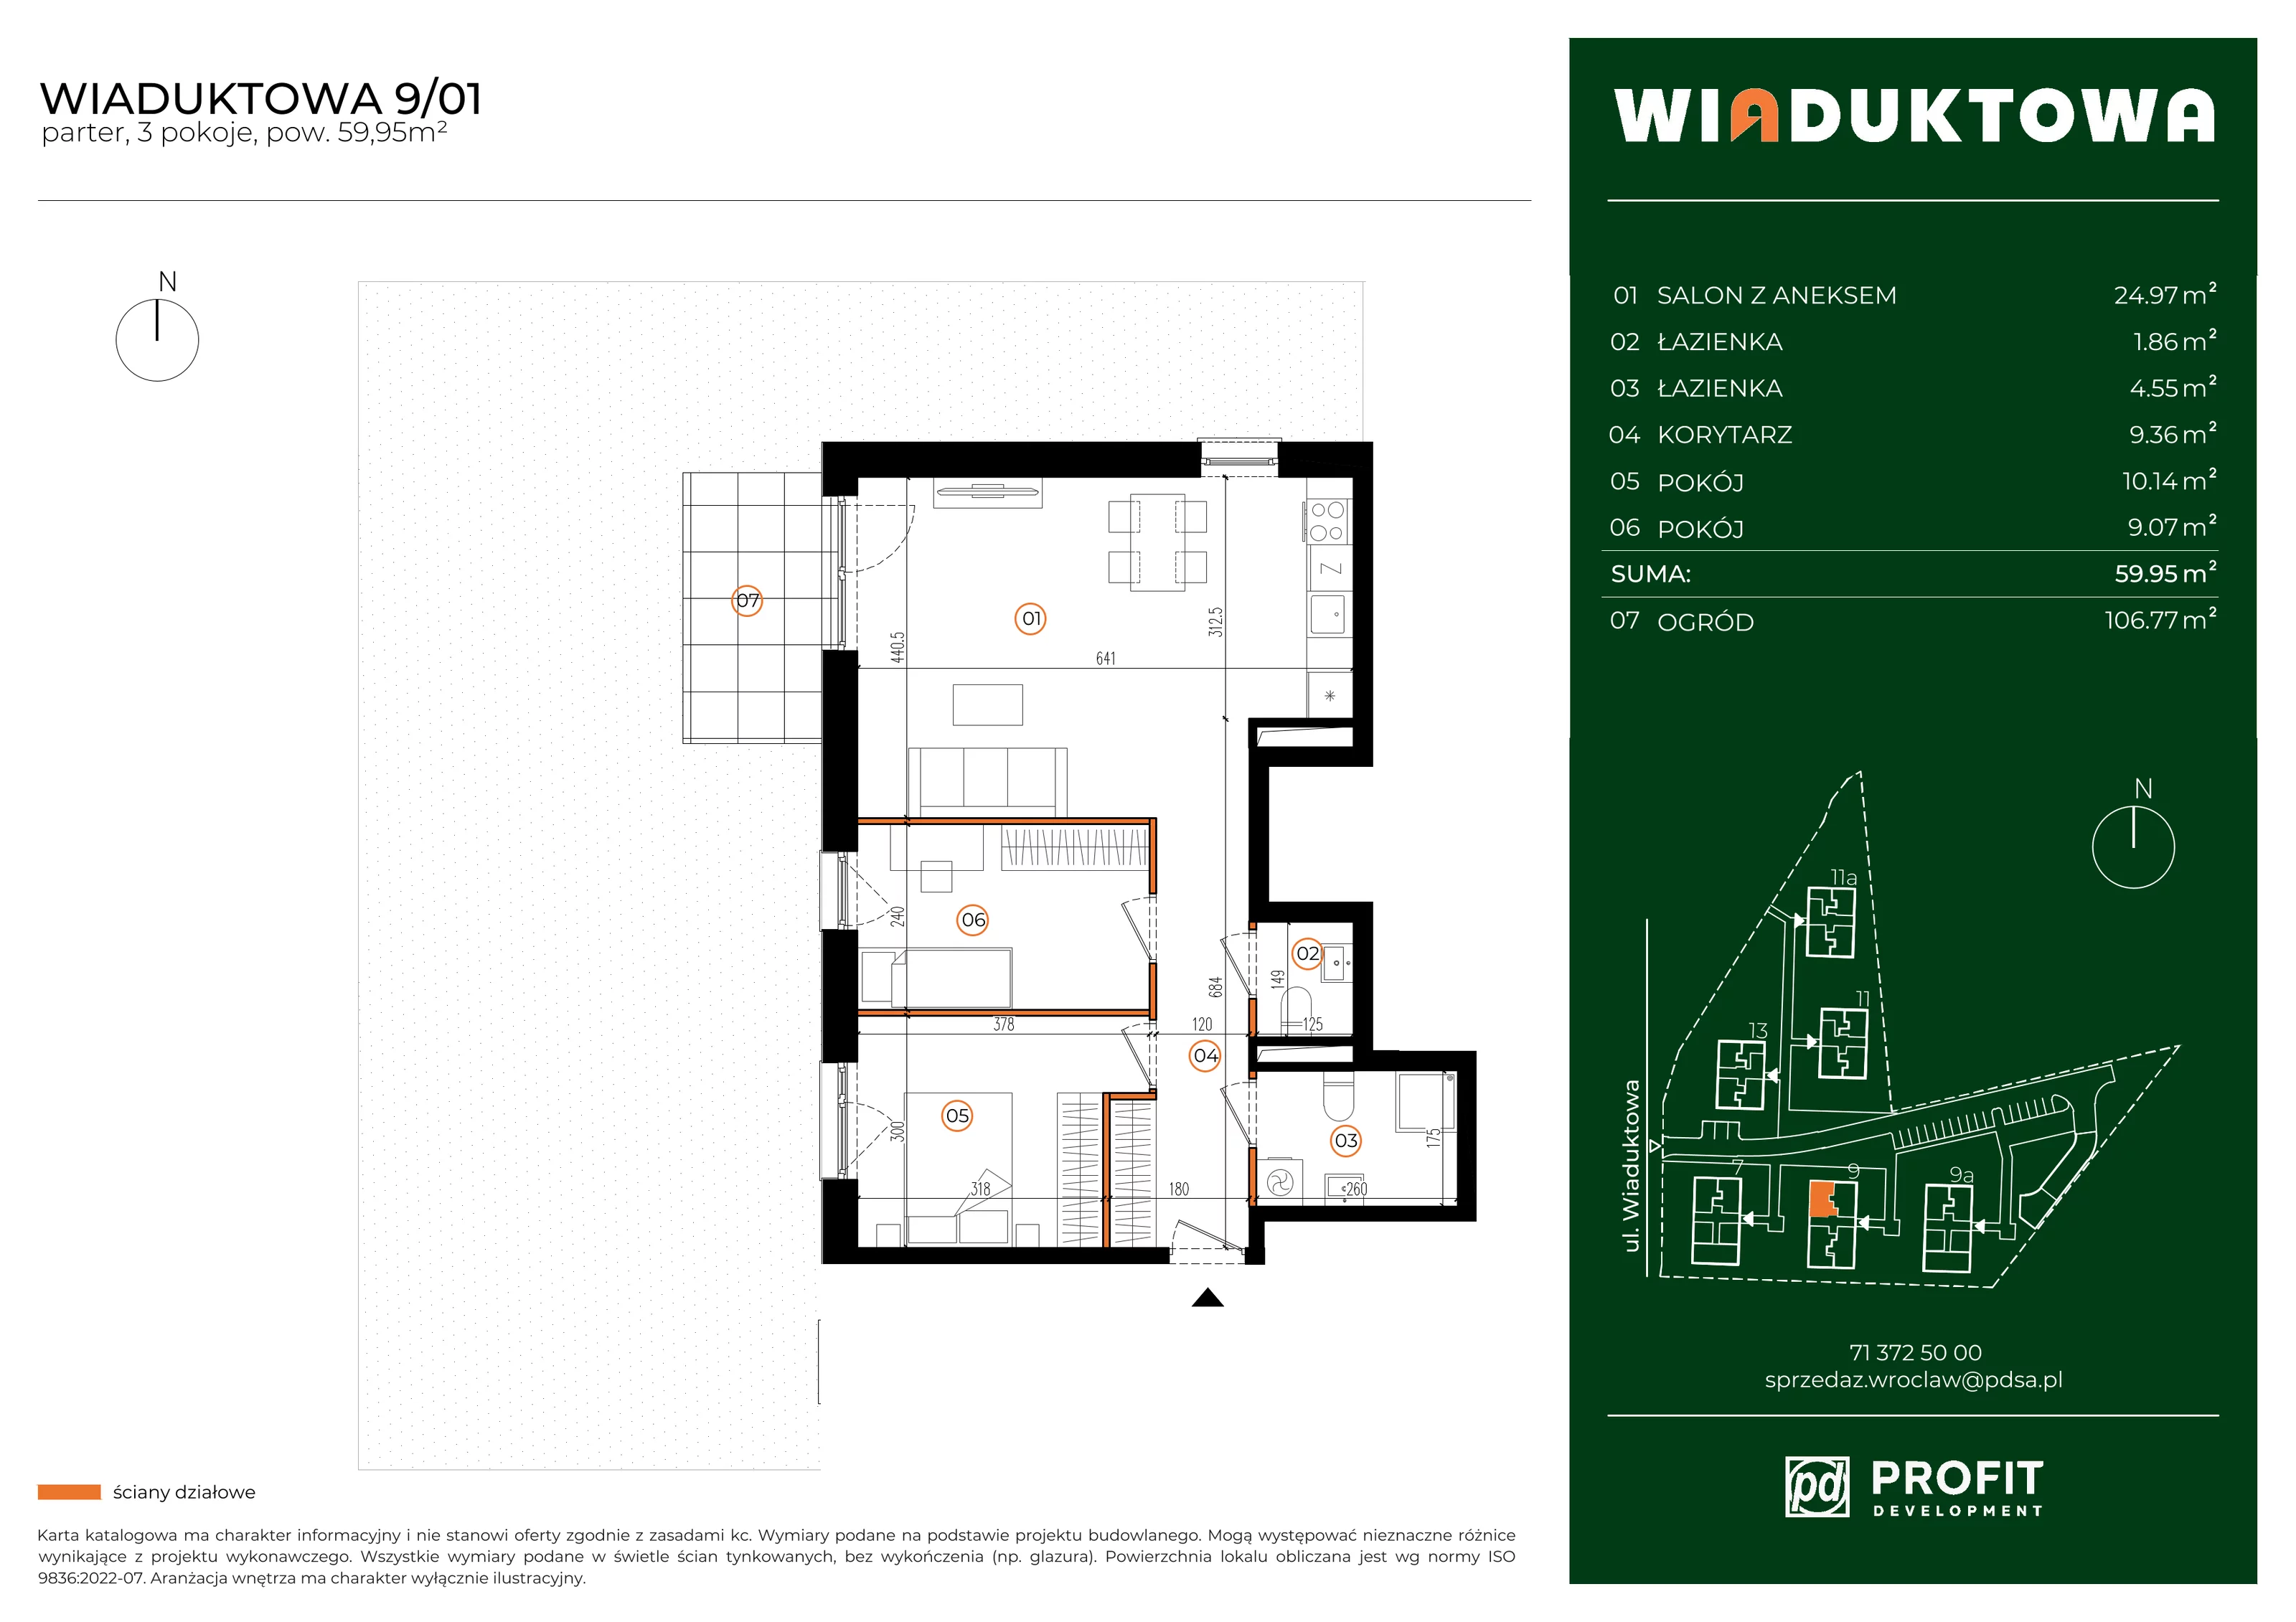 Mieszkanie 59,95 m², parter, oferta nr WI/9/01, Wiaduktowa, Wrocław, Krzyki-Partynice, Krzyki, ul. Wiaduktowa